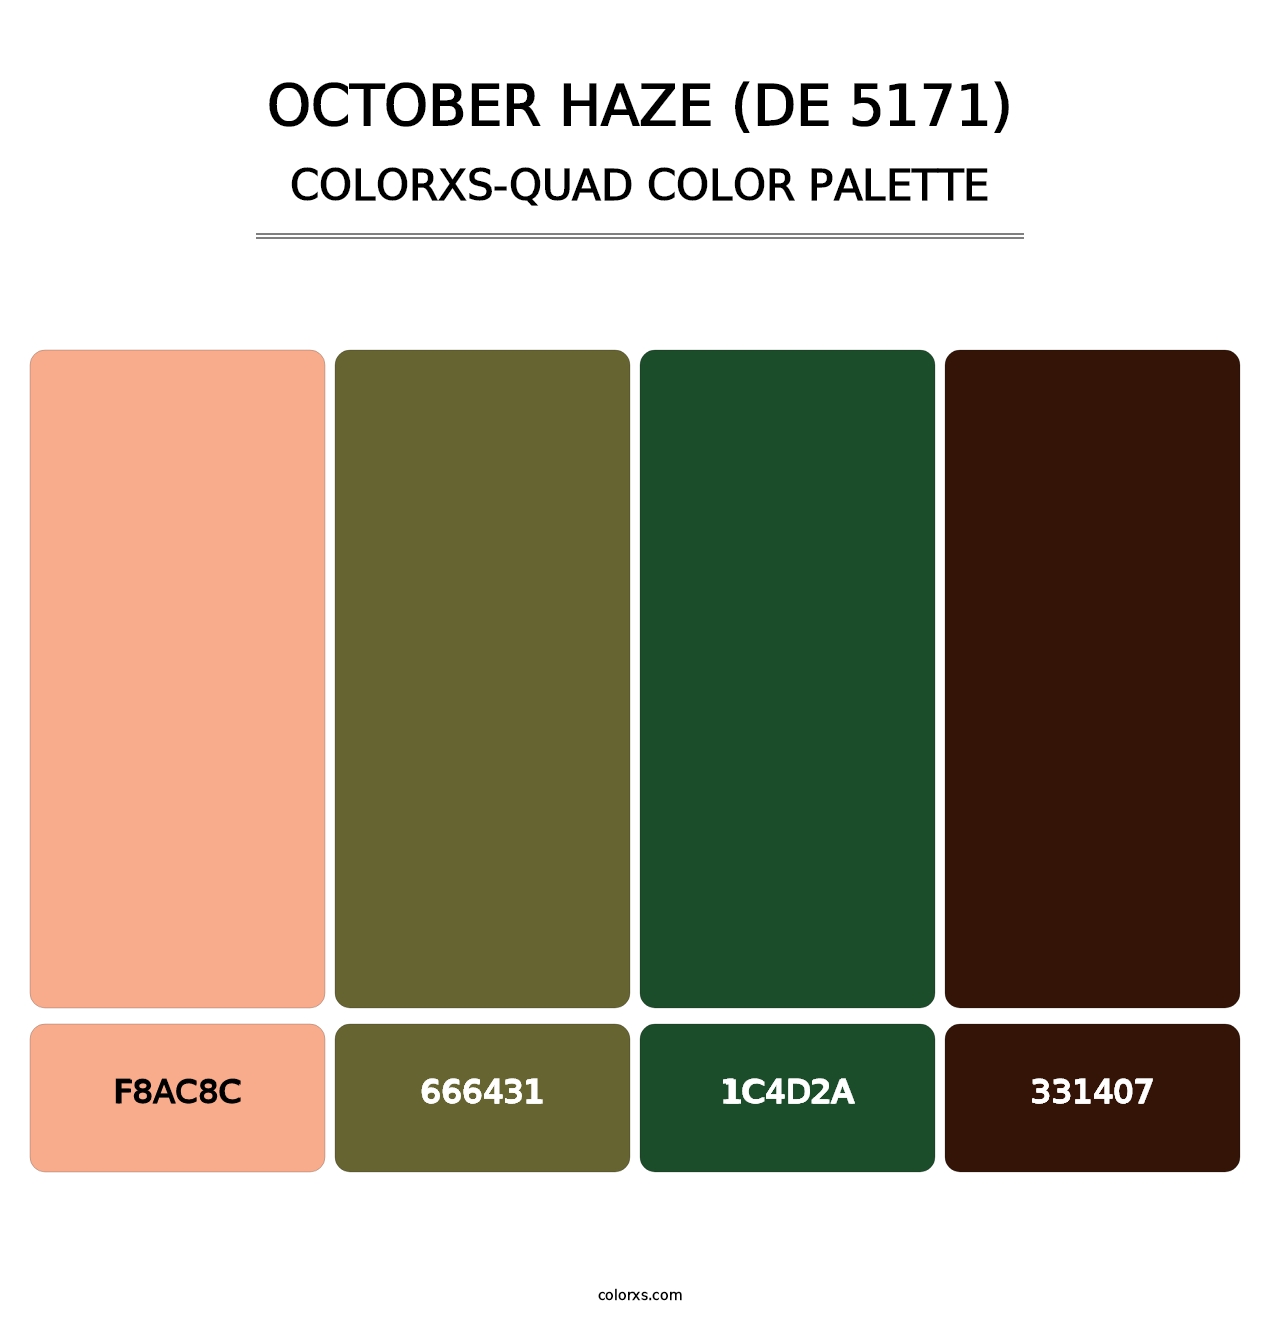 October Haze (DE 5171) - Colorxs Quad Palette